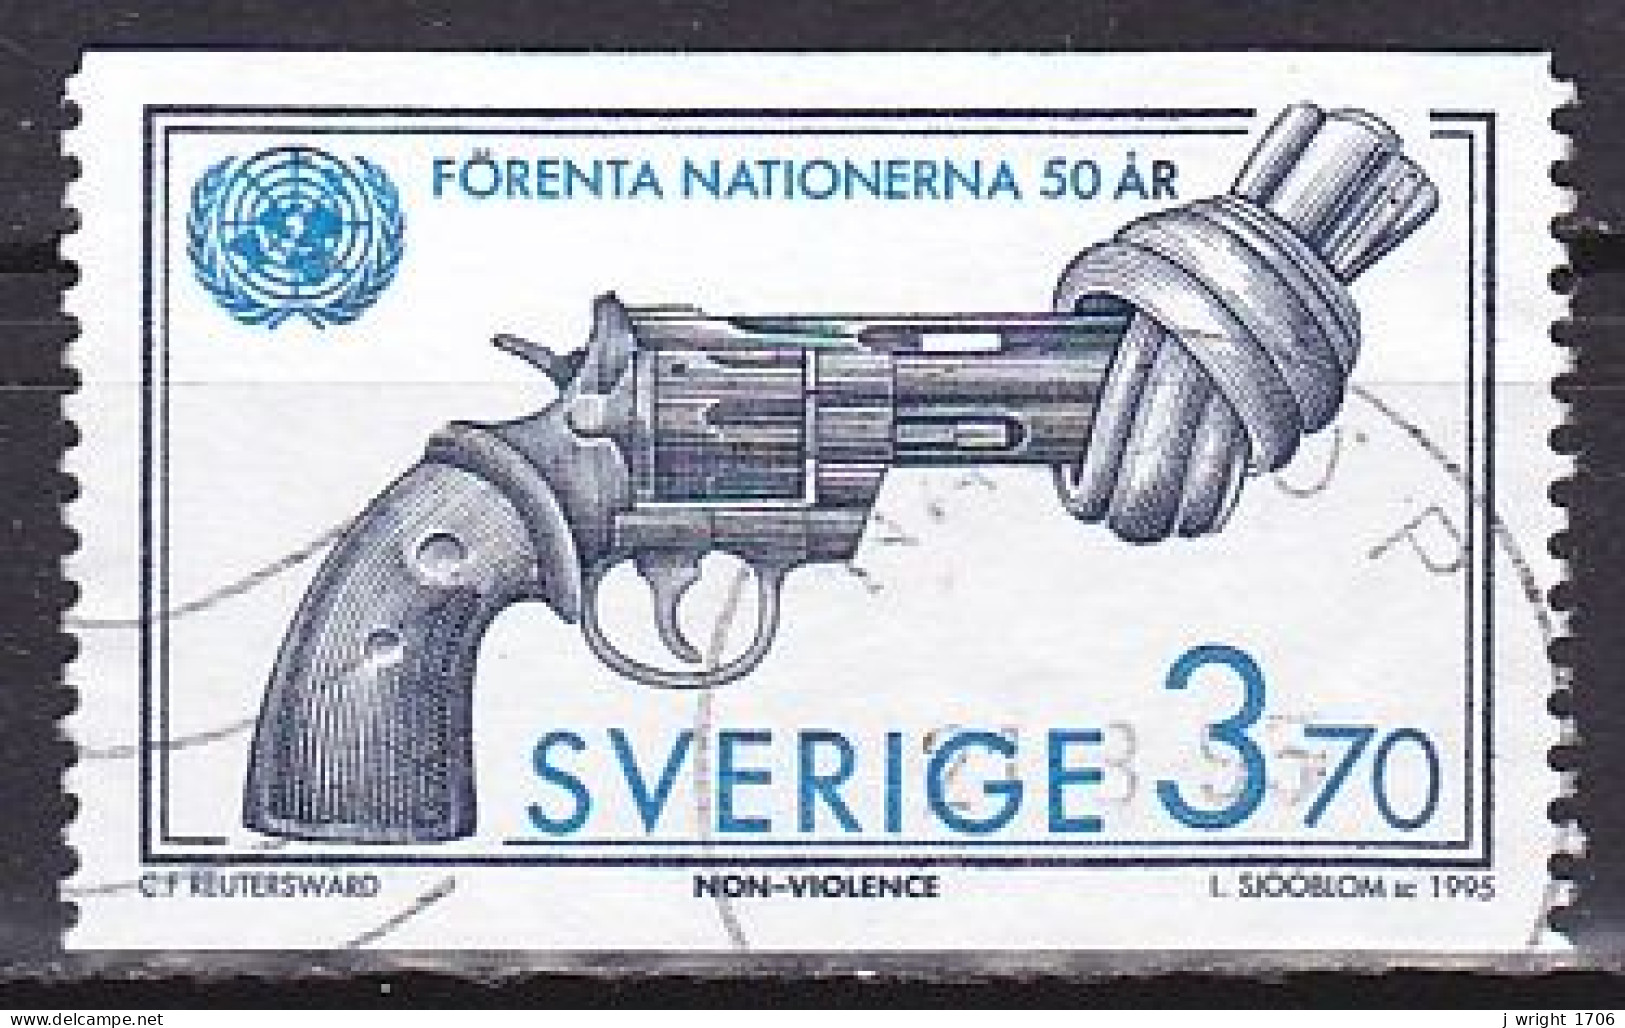 Sweden, 1995, UN 50th Anniv, 3.70kr, USED - Gebruikt